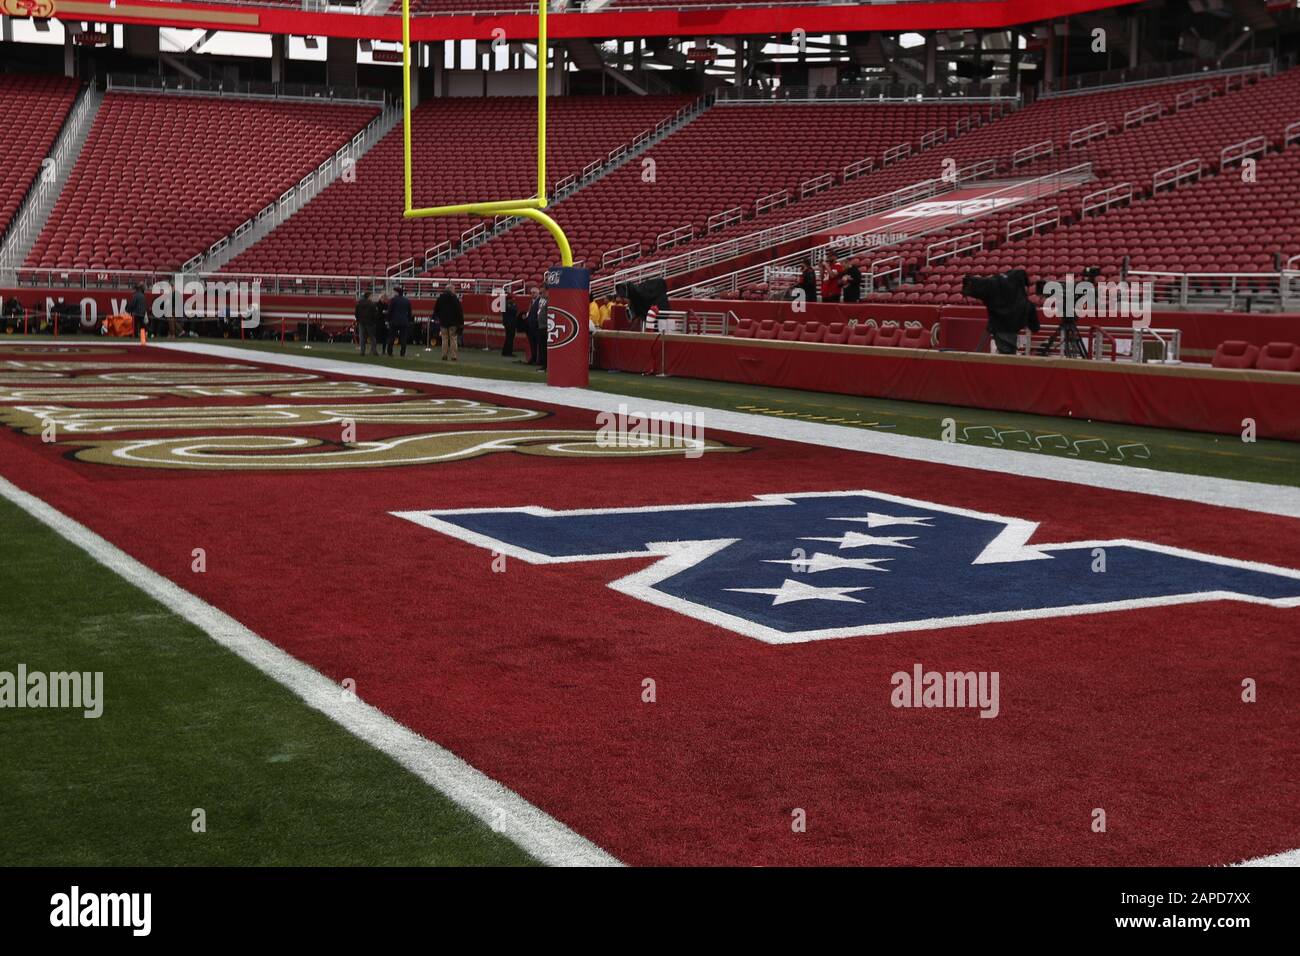 Vue générale du stade de Levi's avant le match de championnat NFL football NFC entre les Green Bay Packers et San Francisco 49ers, dimanche 19 janvier 2020, à Santa Clara, Californie (photo par IOS/ESPA-Images) Banque D'Images